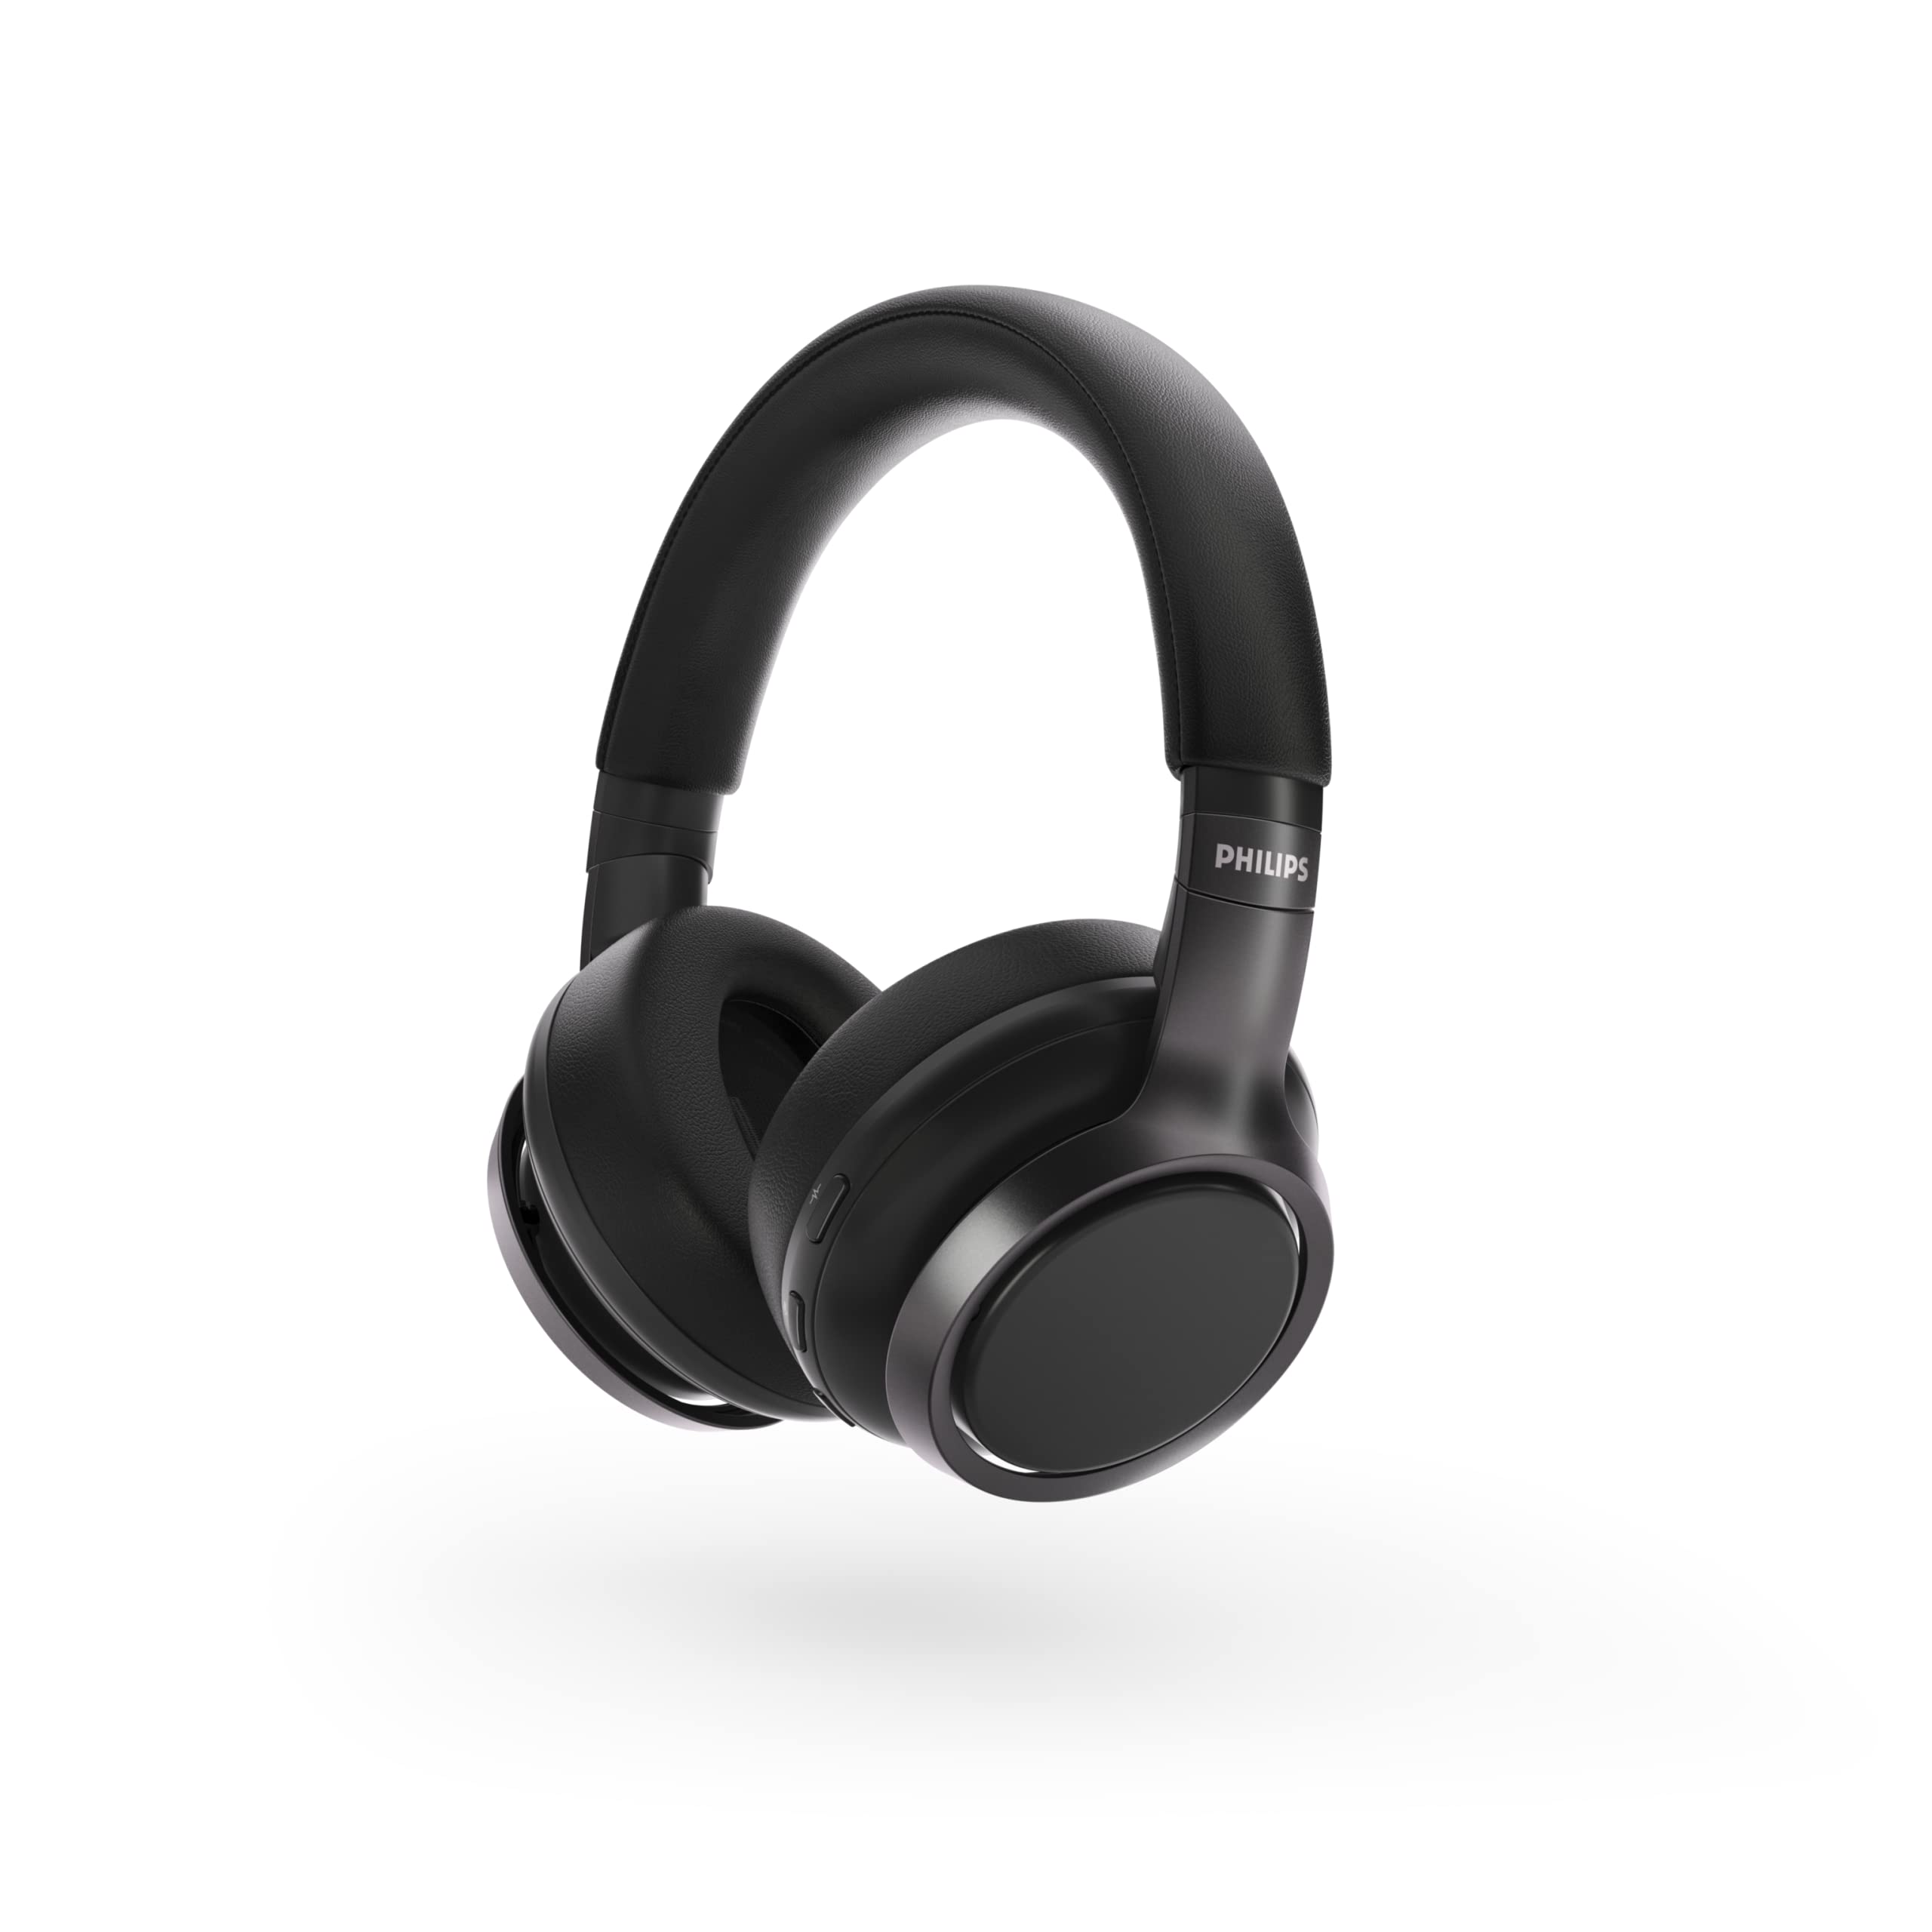 Philips Audio Fones de ouvido Philips H9505 Hybrid Active Noise Canceling (ANC) Over Ear sem fio Bluetooth Pro-Performance com conexão Bluetooth multiponto